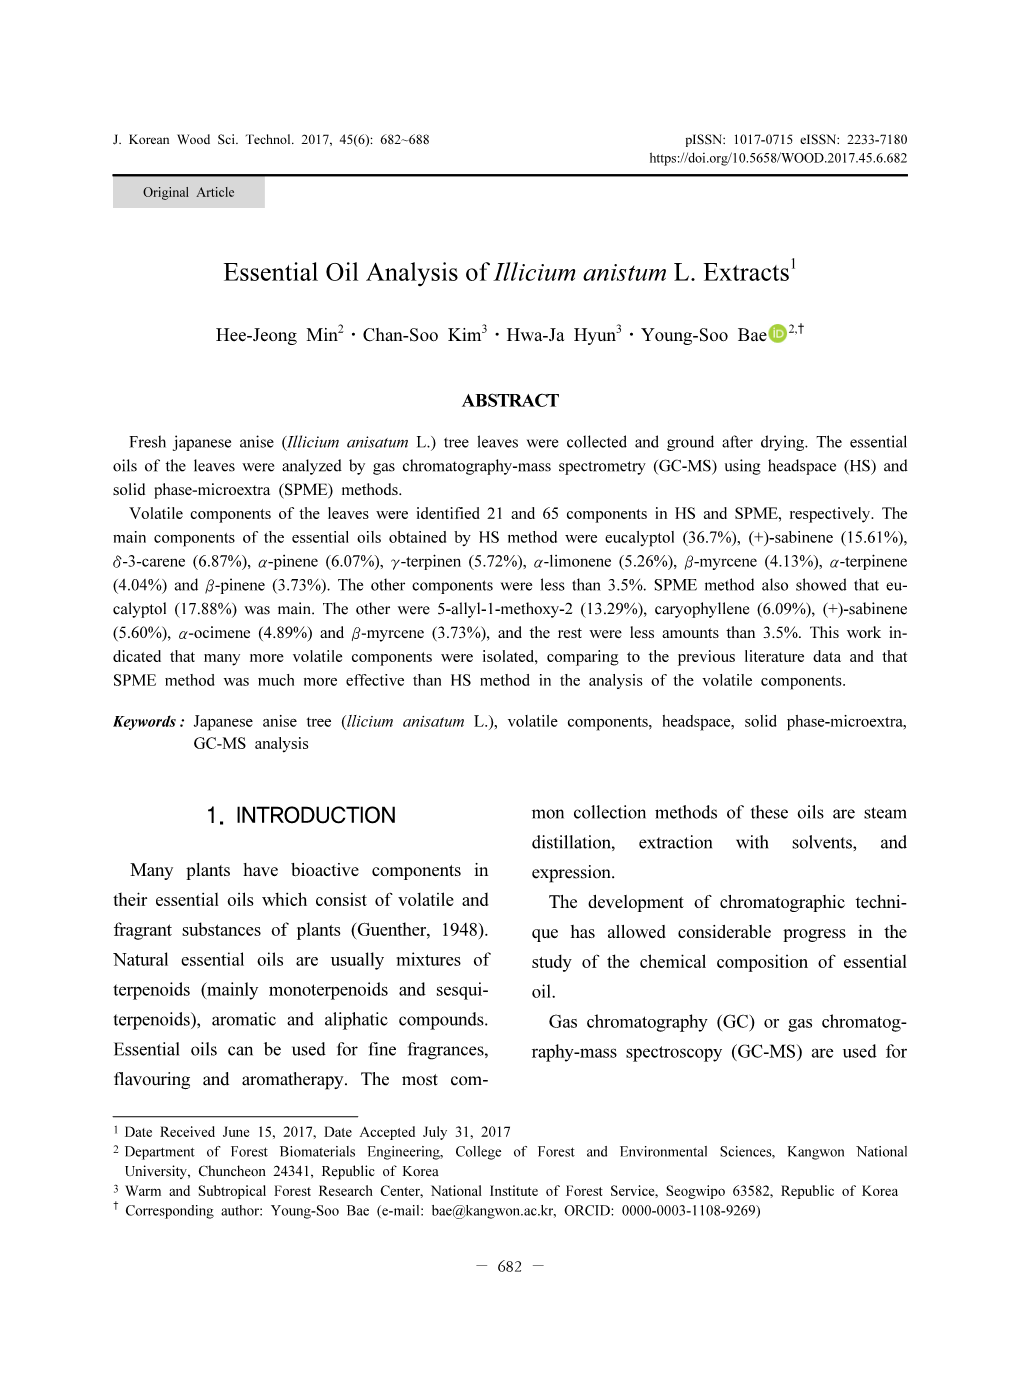 Essential Oil Analysis of Illicium Anistum L. Extracts1